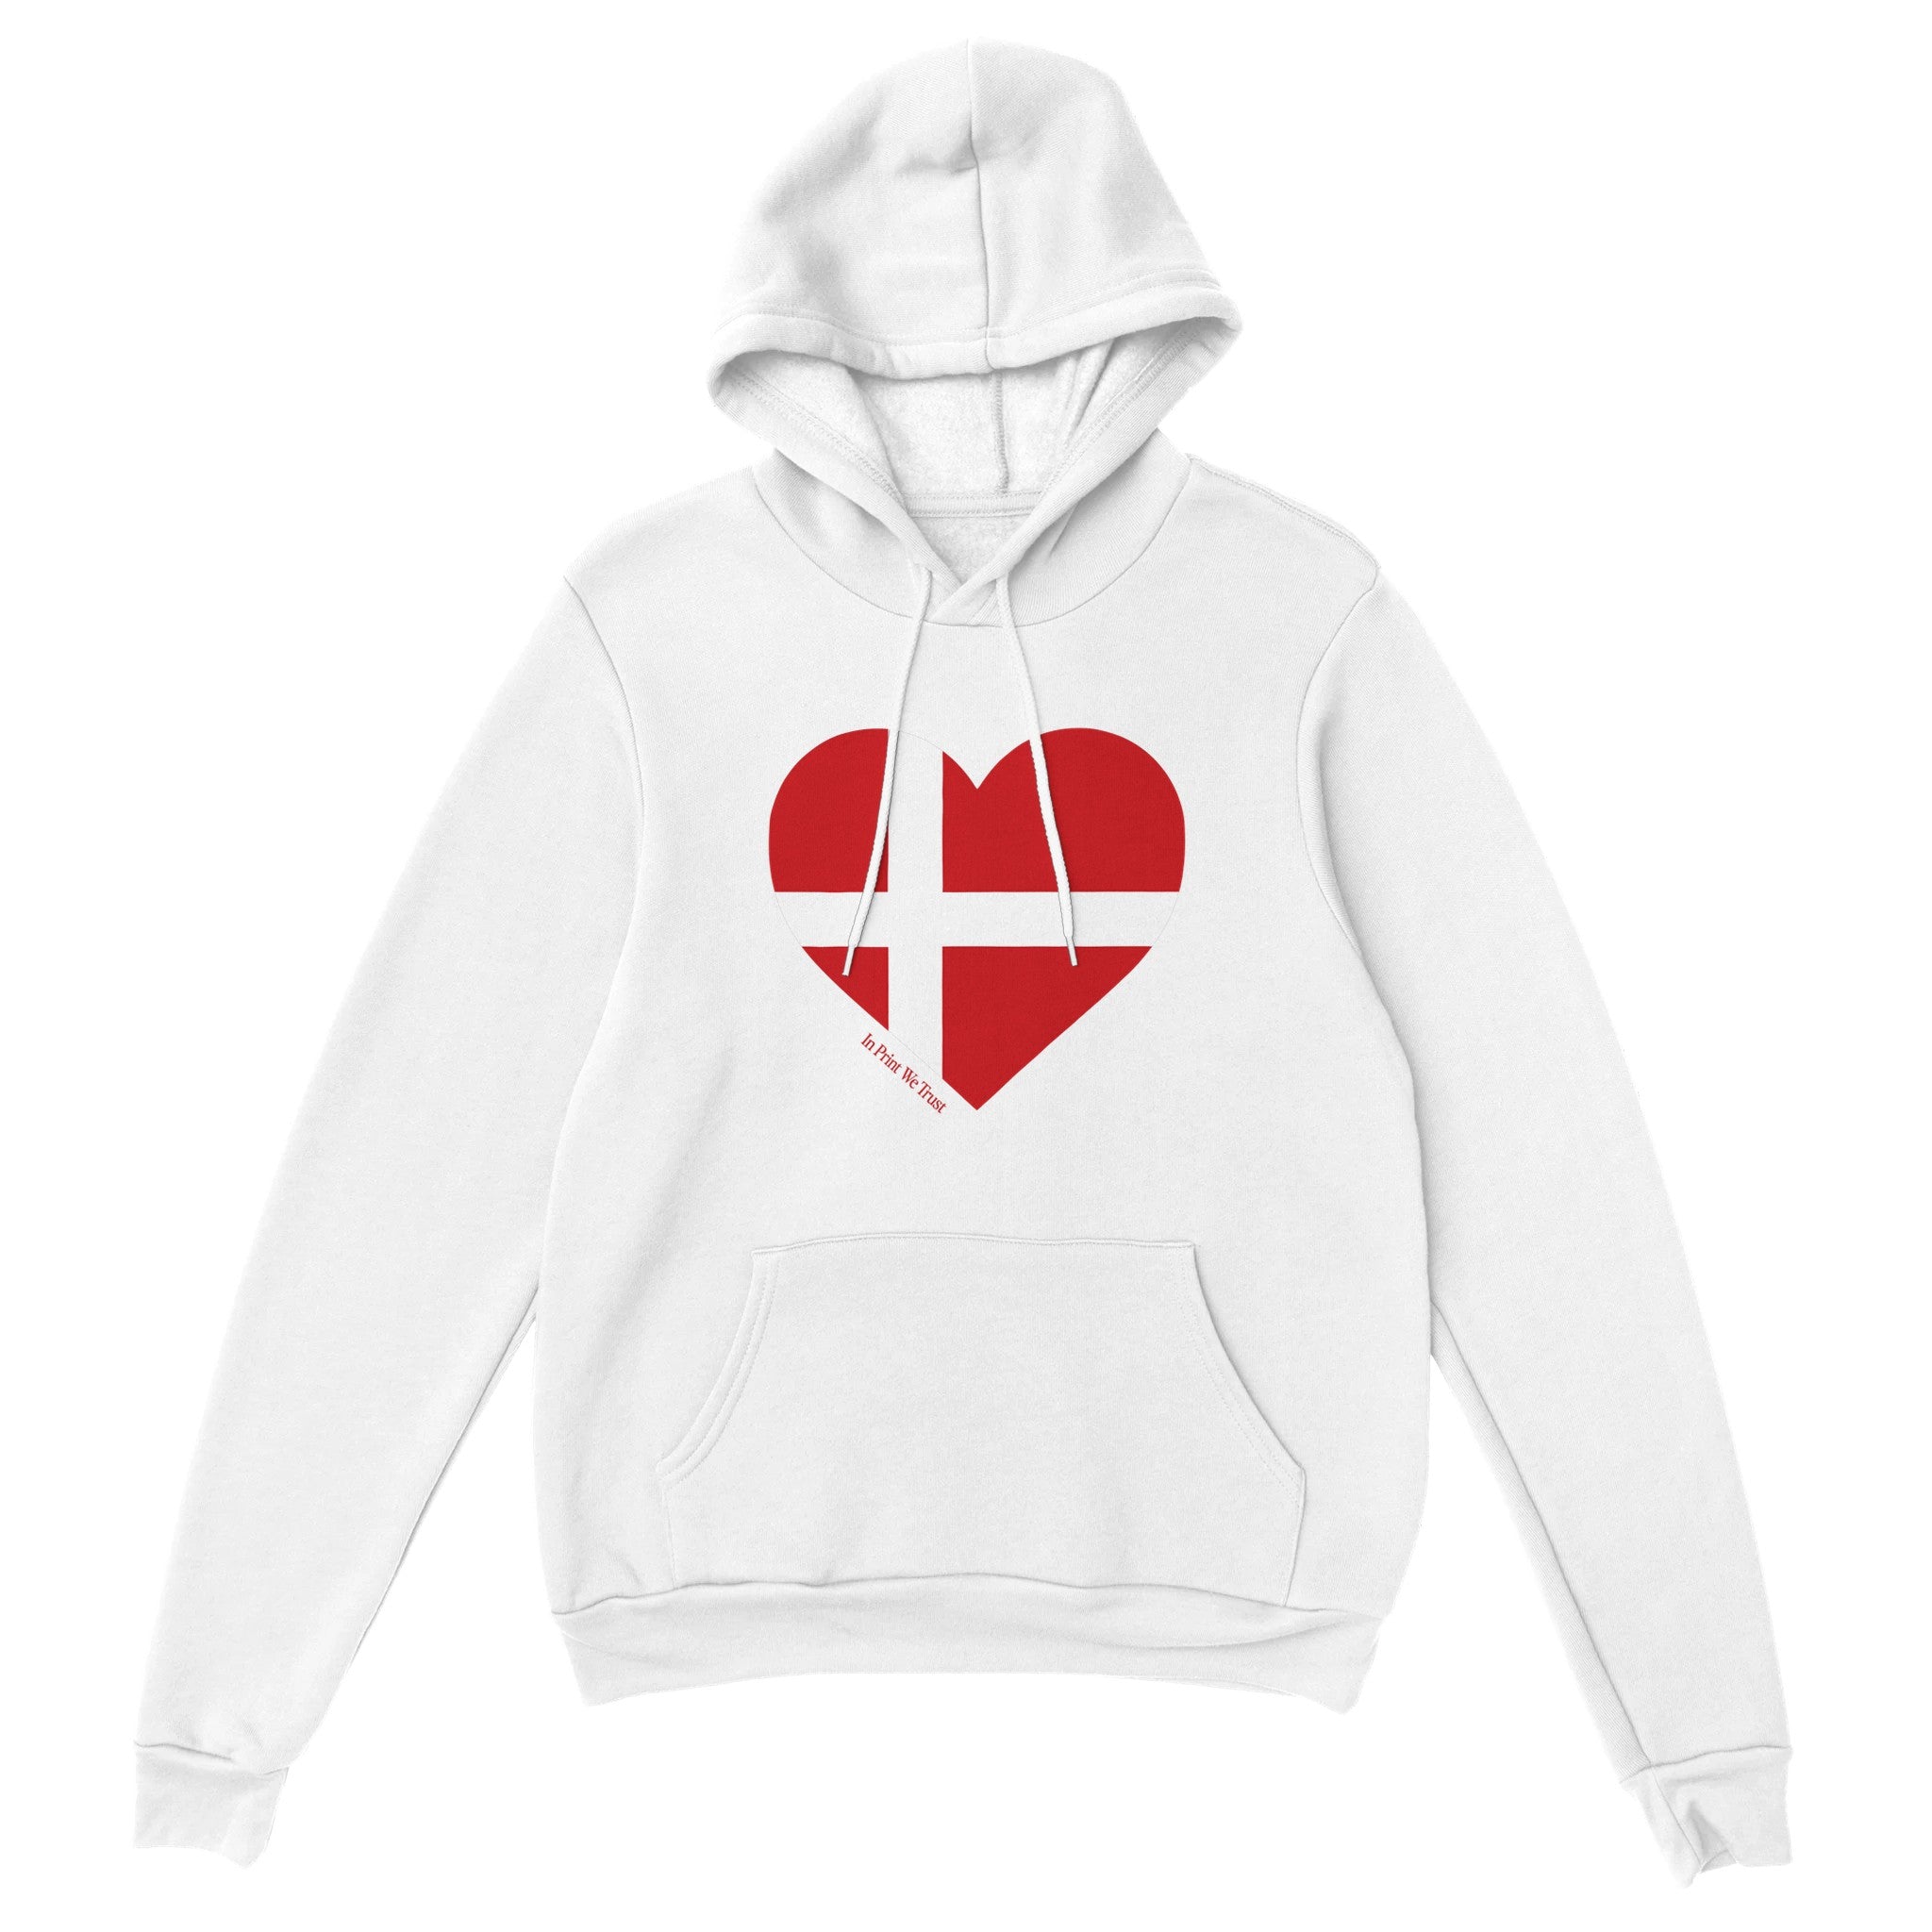 'Denmark' hoodie - In Print We Trust